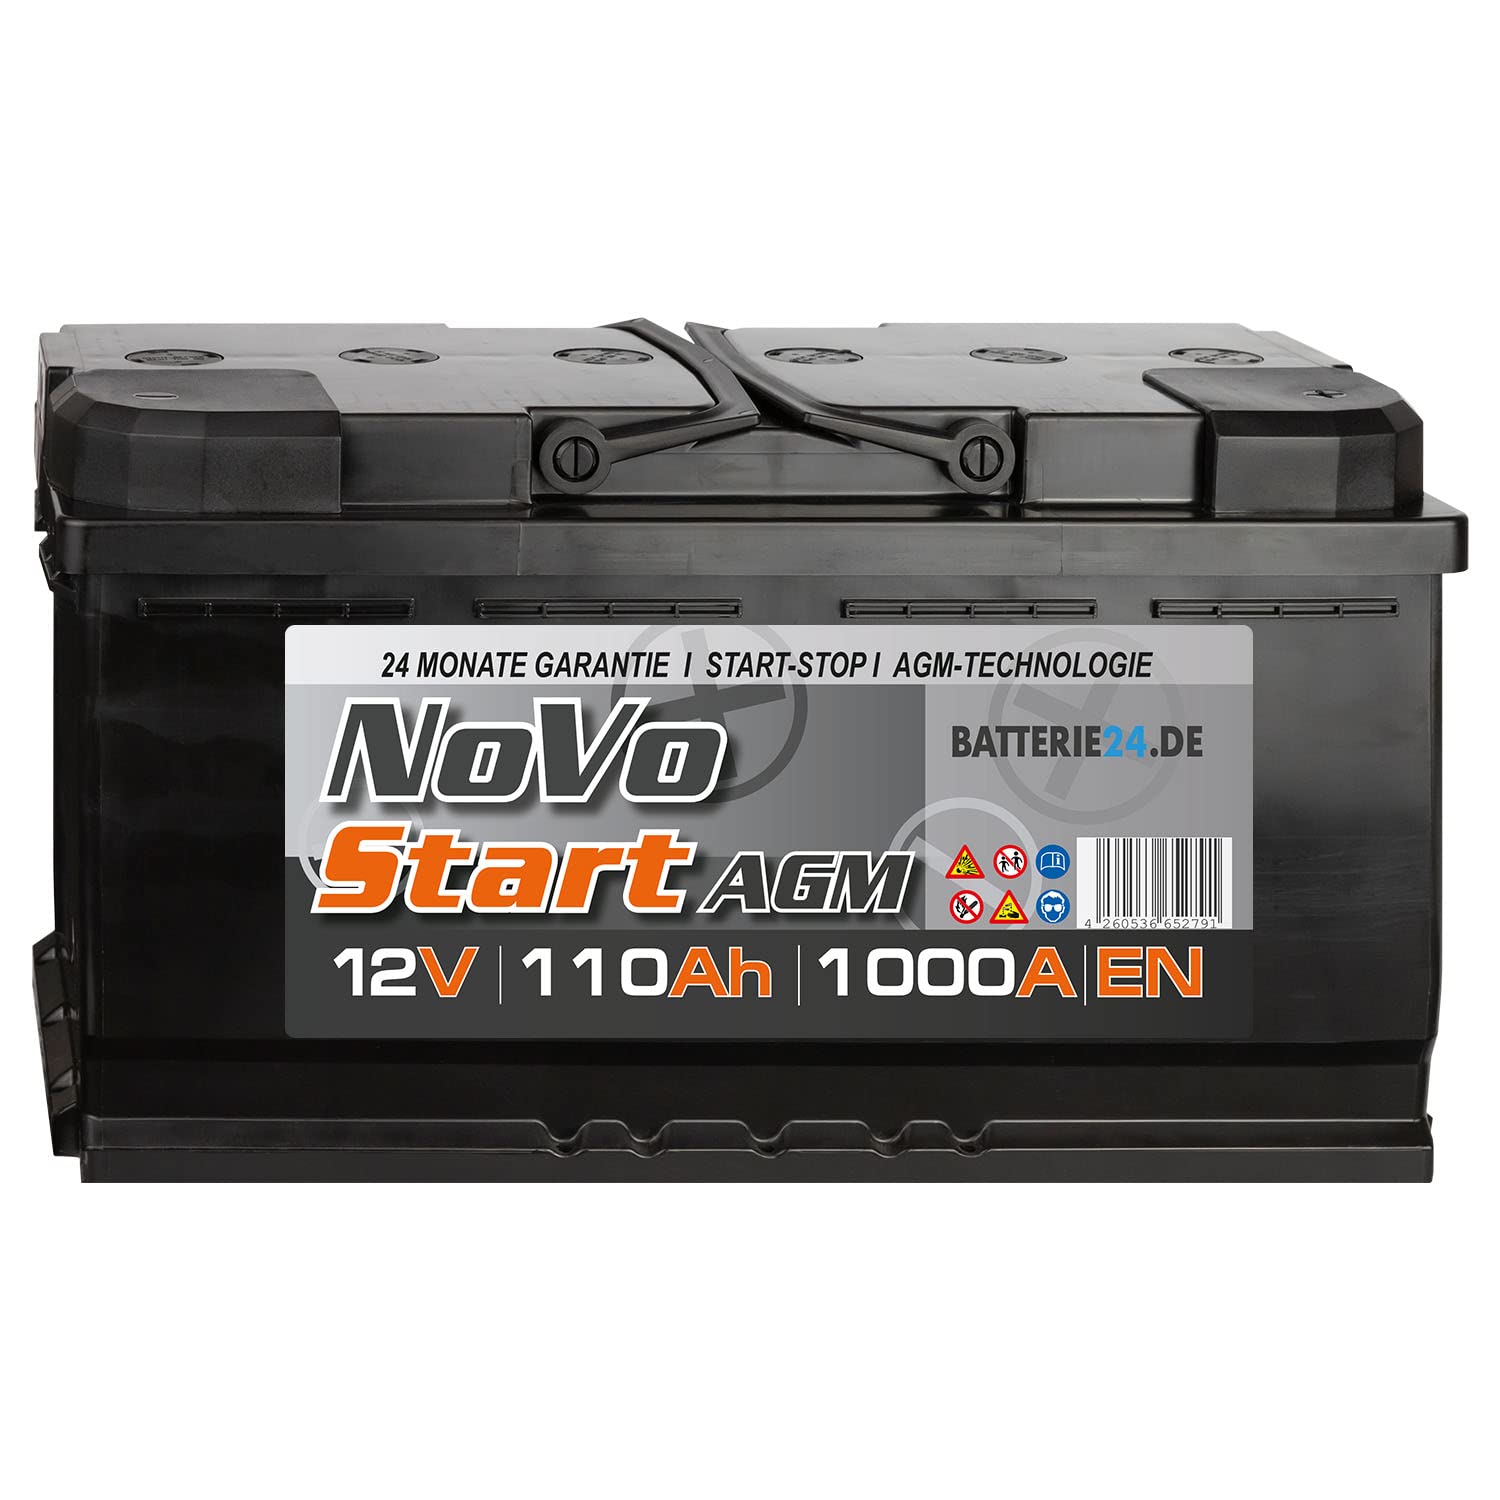 NoVo AGM Autobatterie 12V (110 Ah) von Batterie24.de